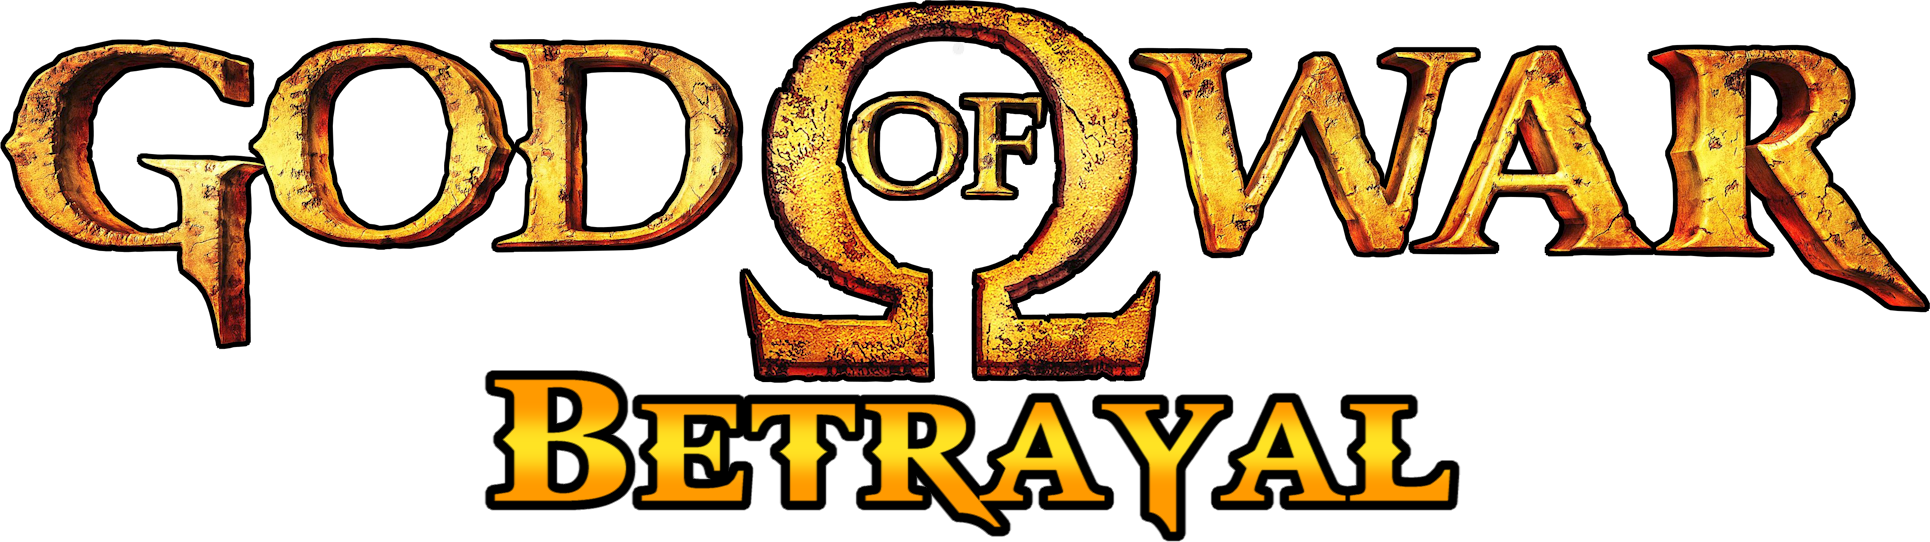 God of War: Betrayal, God of War Wiki